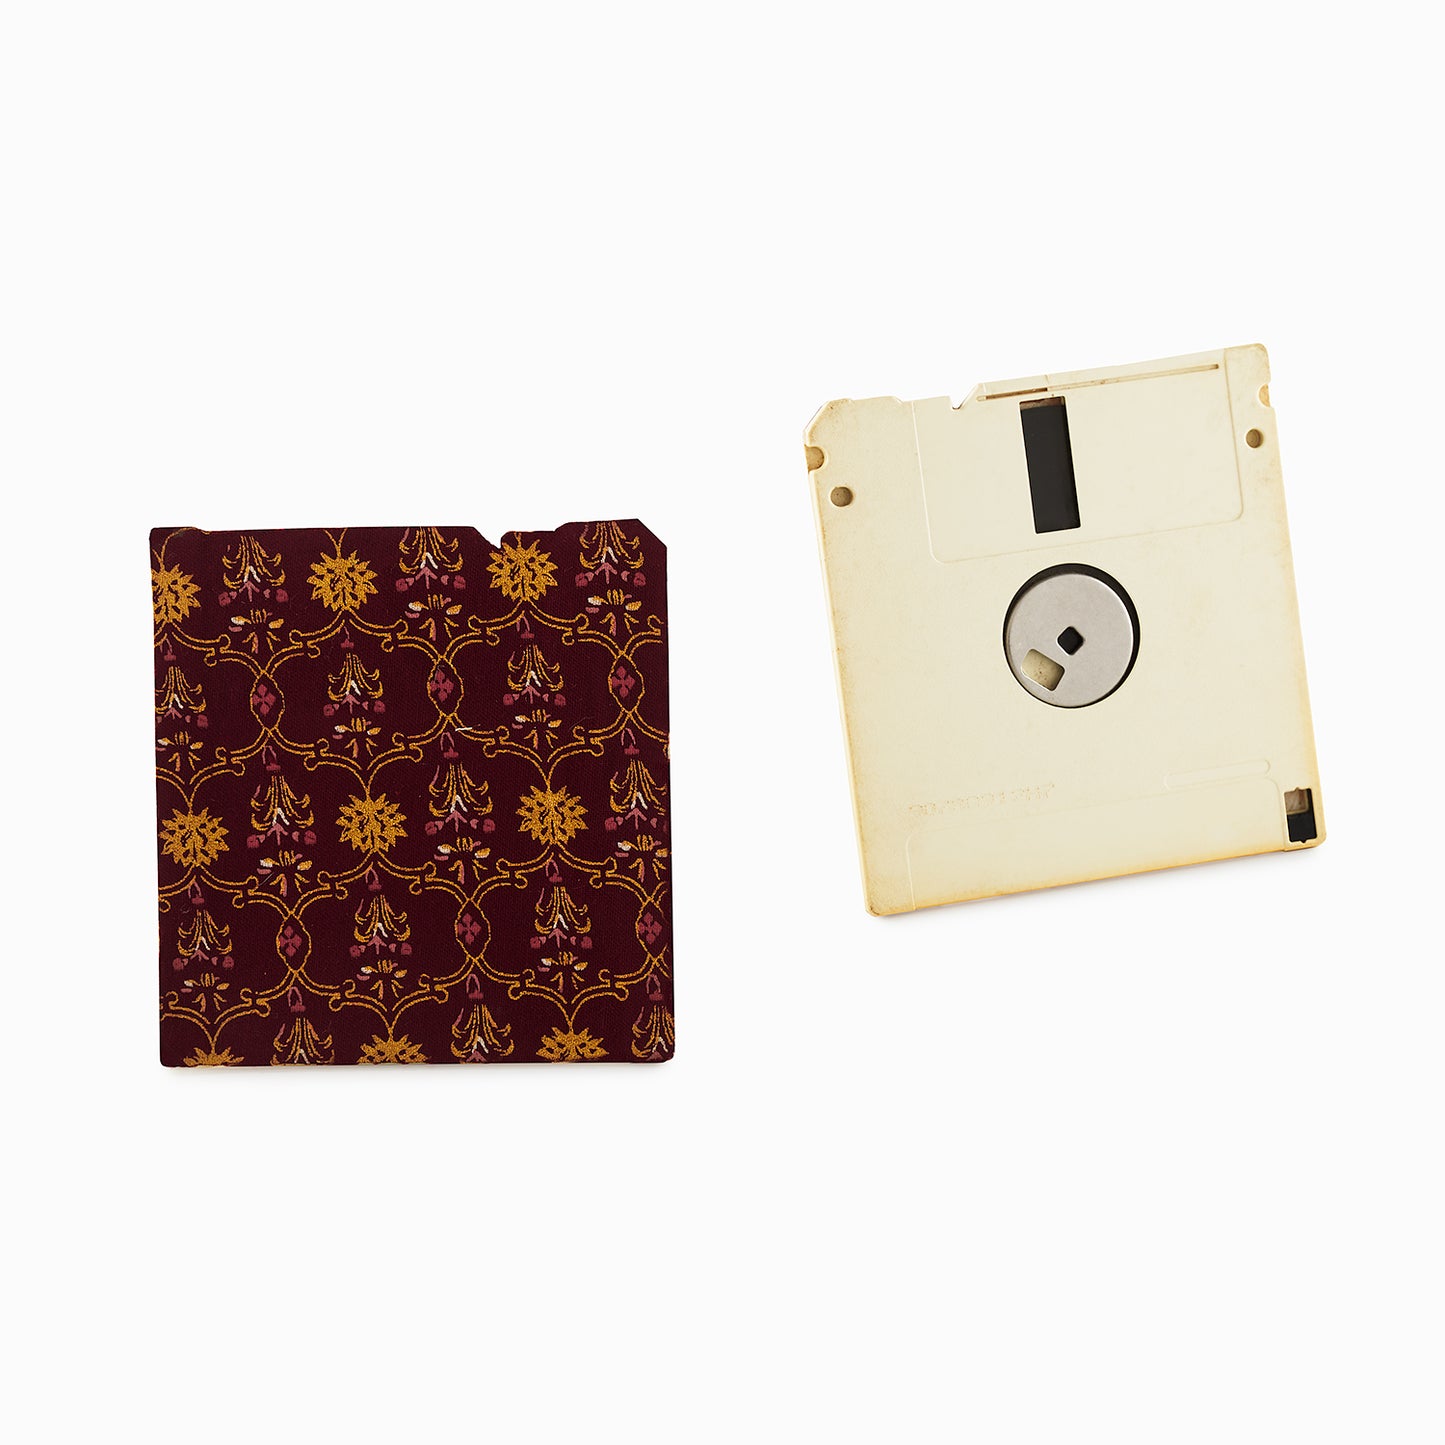 Brunette Brown - Floppy Disk Coaster Set of 2